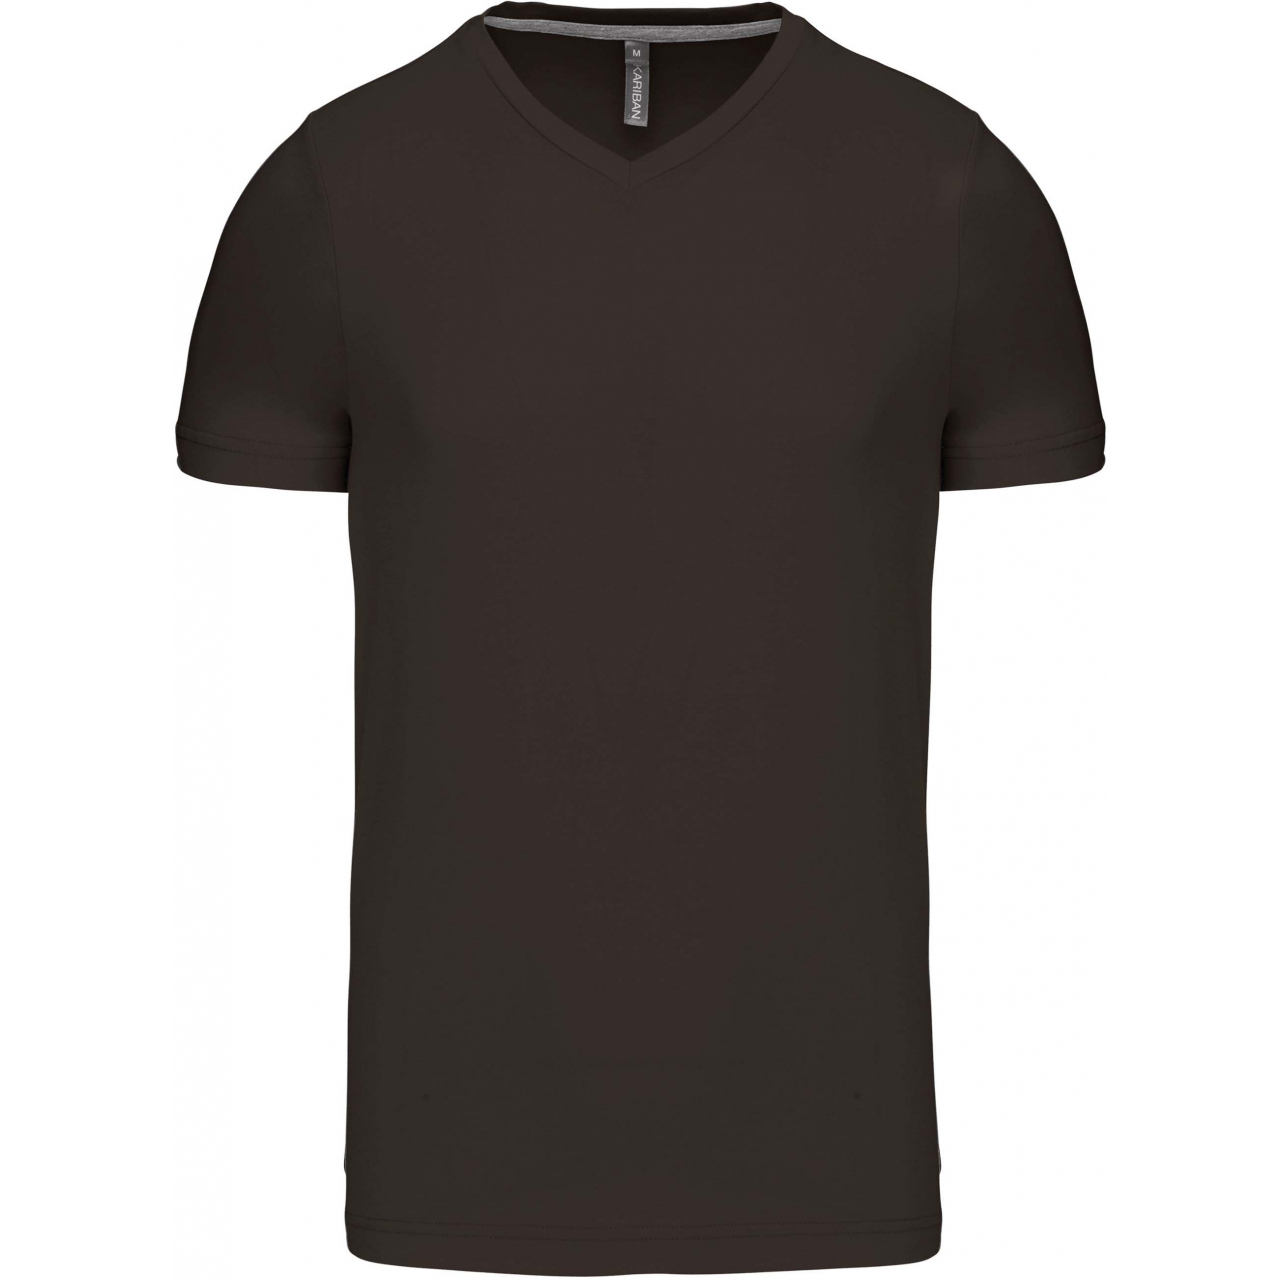 Pánské tričko Kariban krátký rukáv V-neck - tmavé khaki, L